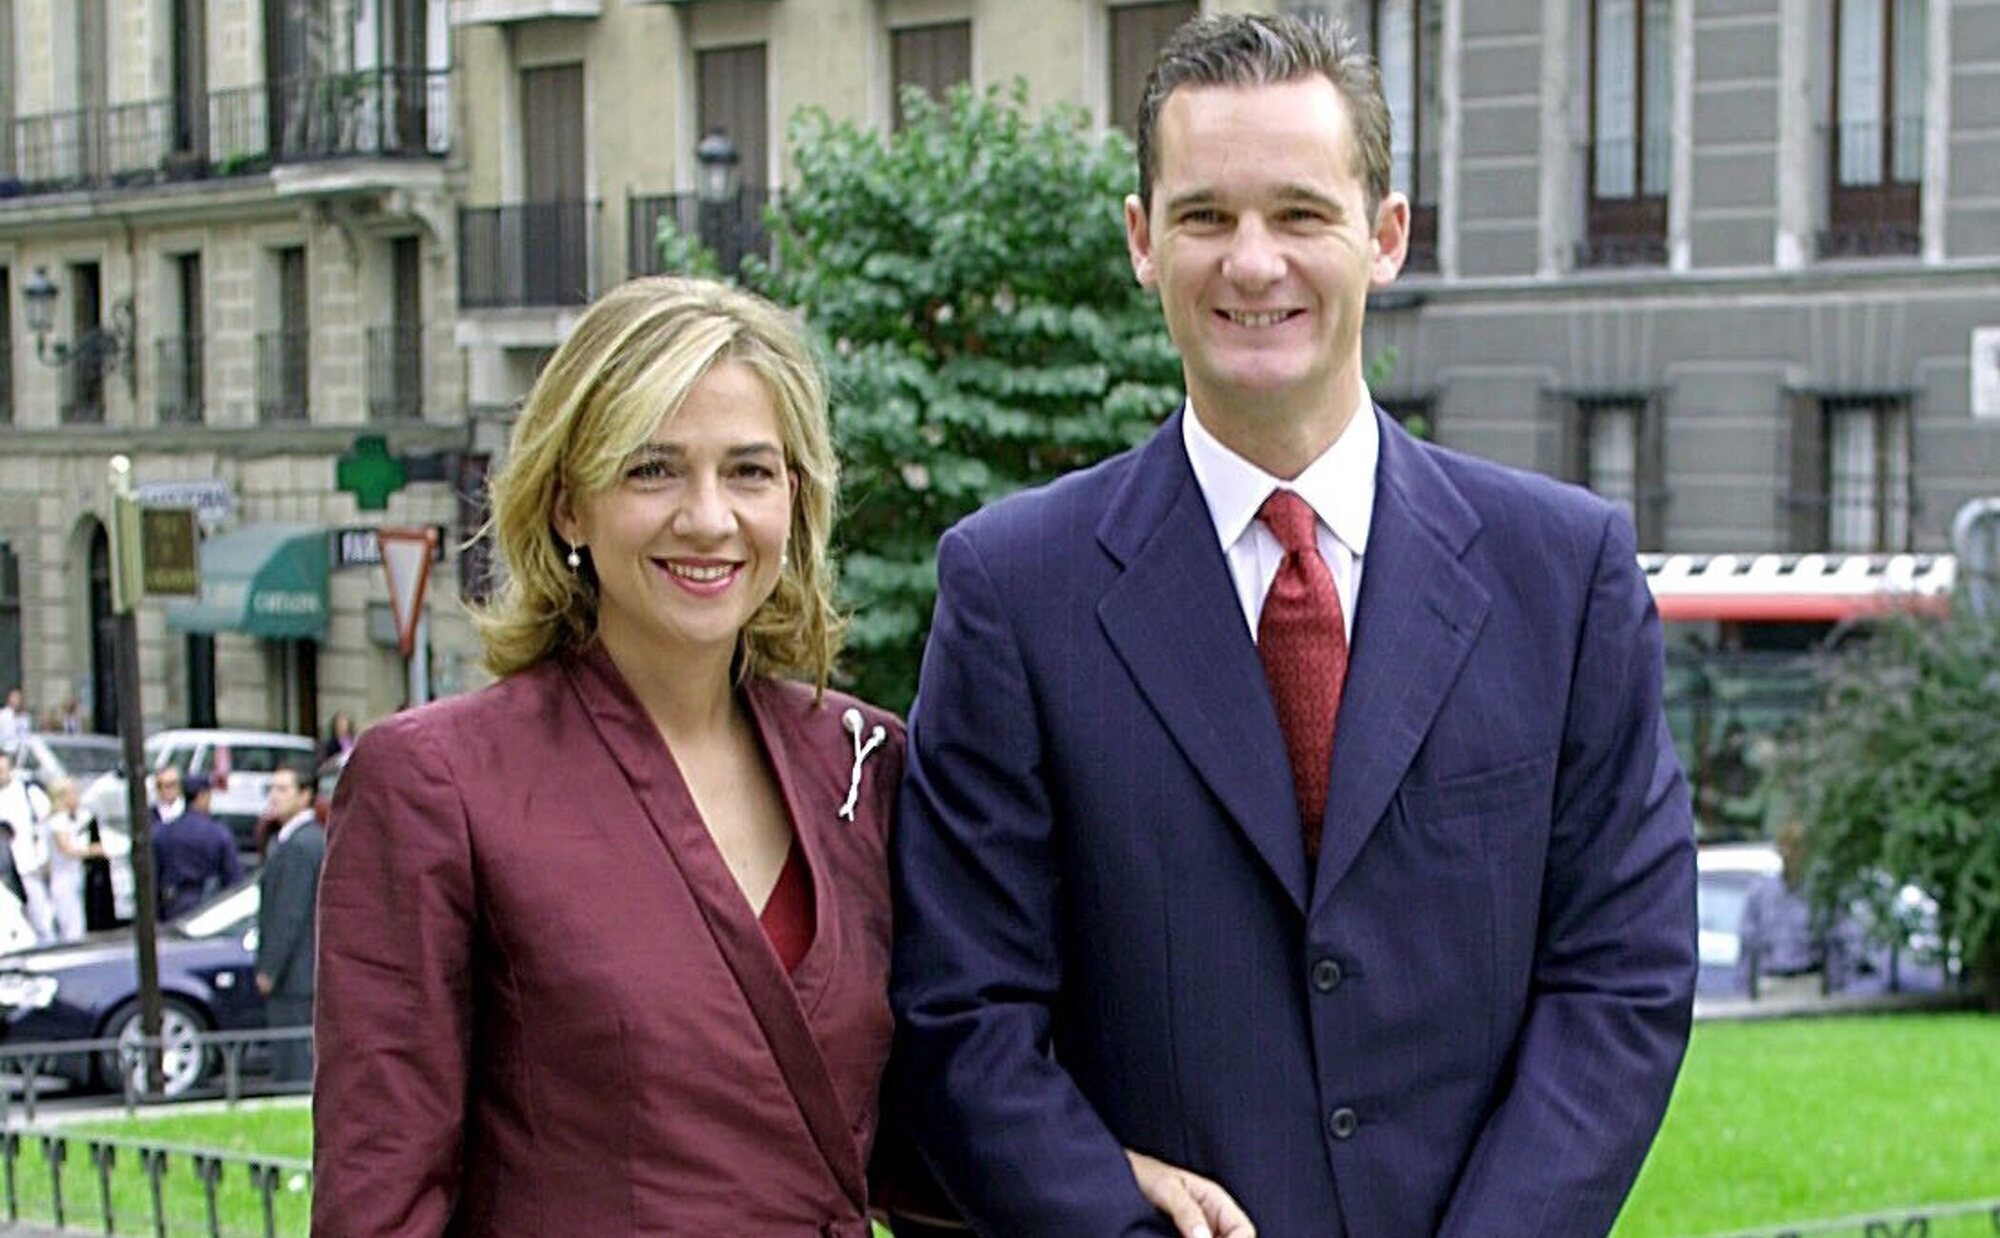 La Infanta Cristina e Iñaki Urdangarin firman el divorcio de mutuo acuerdo, en secreto y ante notario